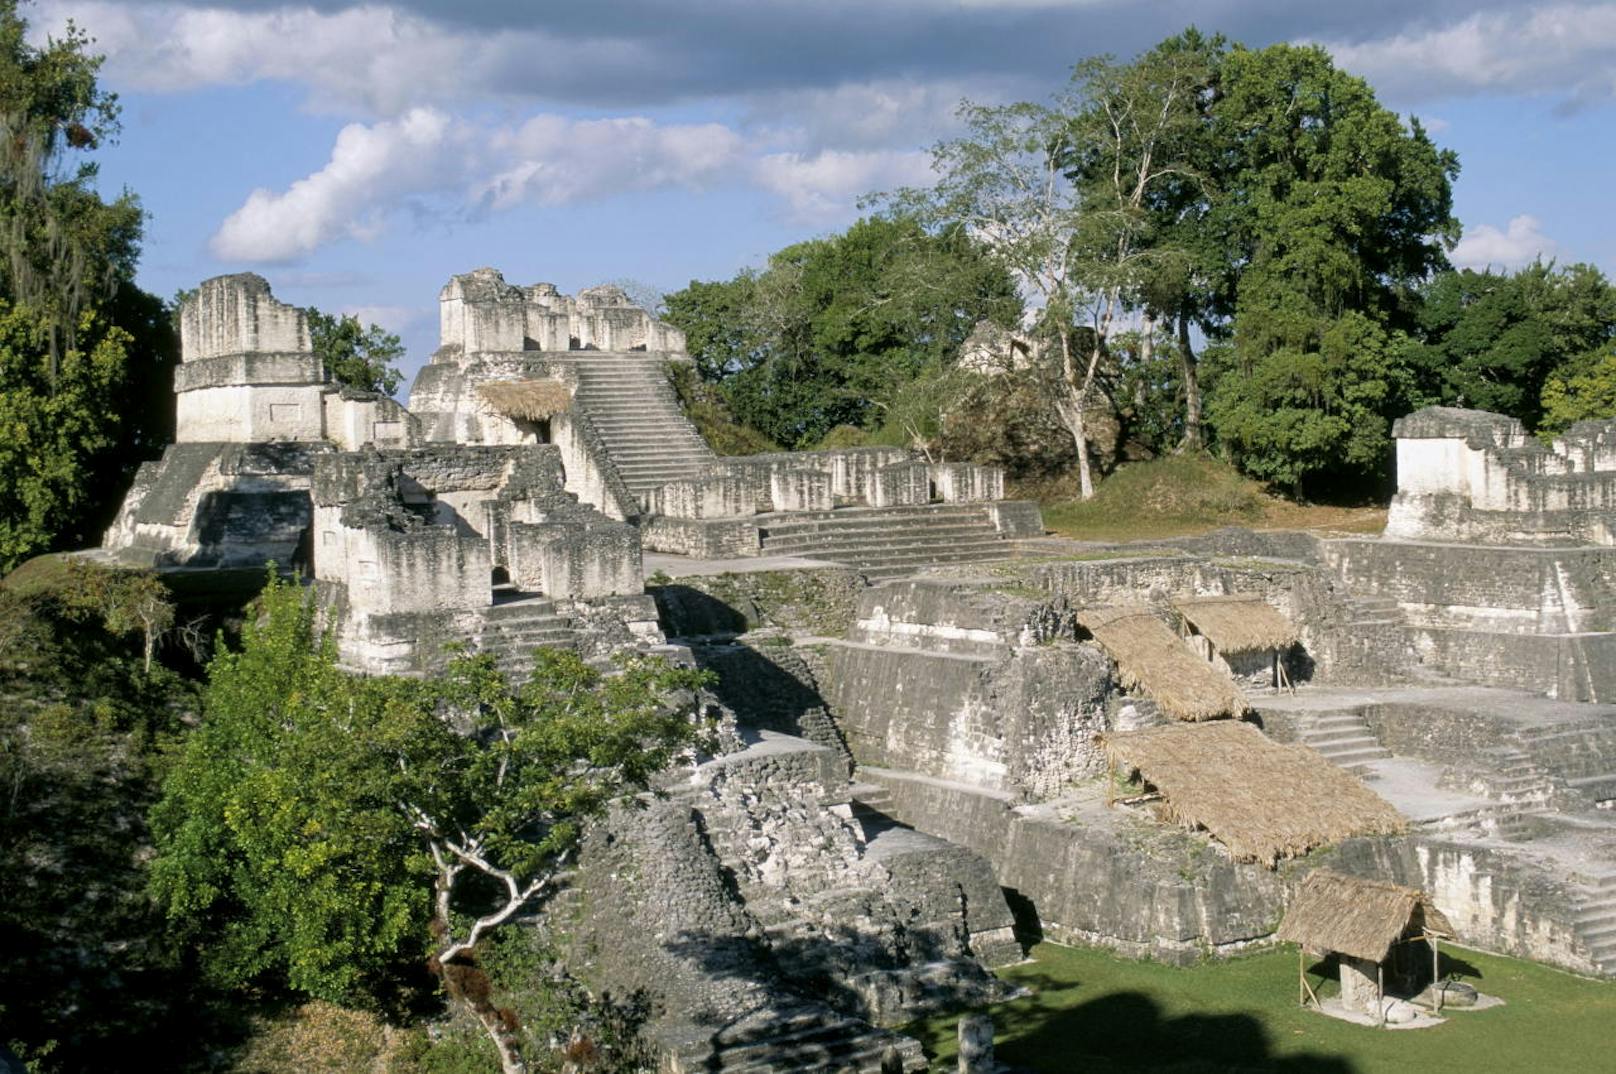 Die Wissenschaftler gehen aufgrund der neuen Befunde davon aus, dass zur Blüte der Maya-Zivilisation vor 1.200 Jahren nicht fünf Millionen, sondern 15 Millionen oder mehr Menschen in der Gegend lebten.